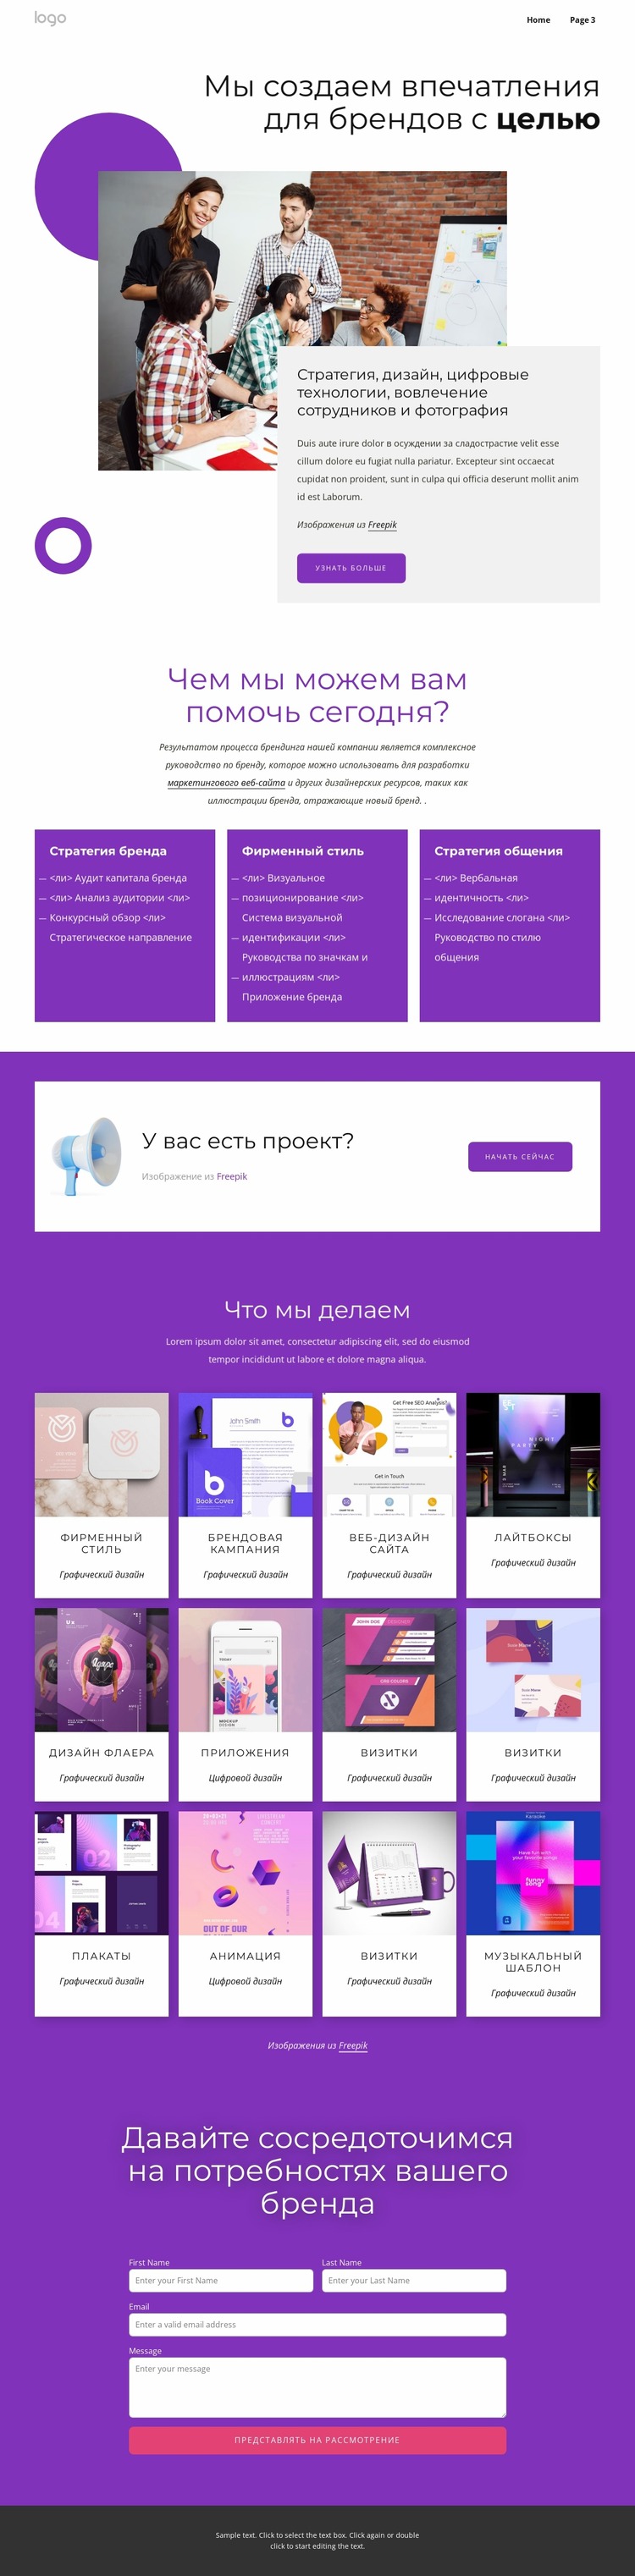 Полный брендинг и веб-дизайн Шаблон Joomla